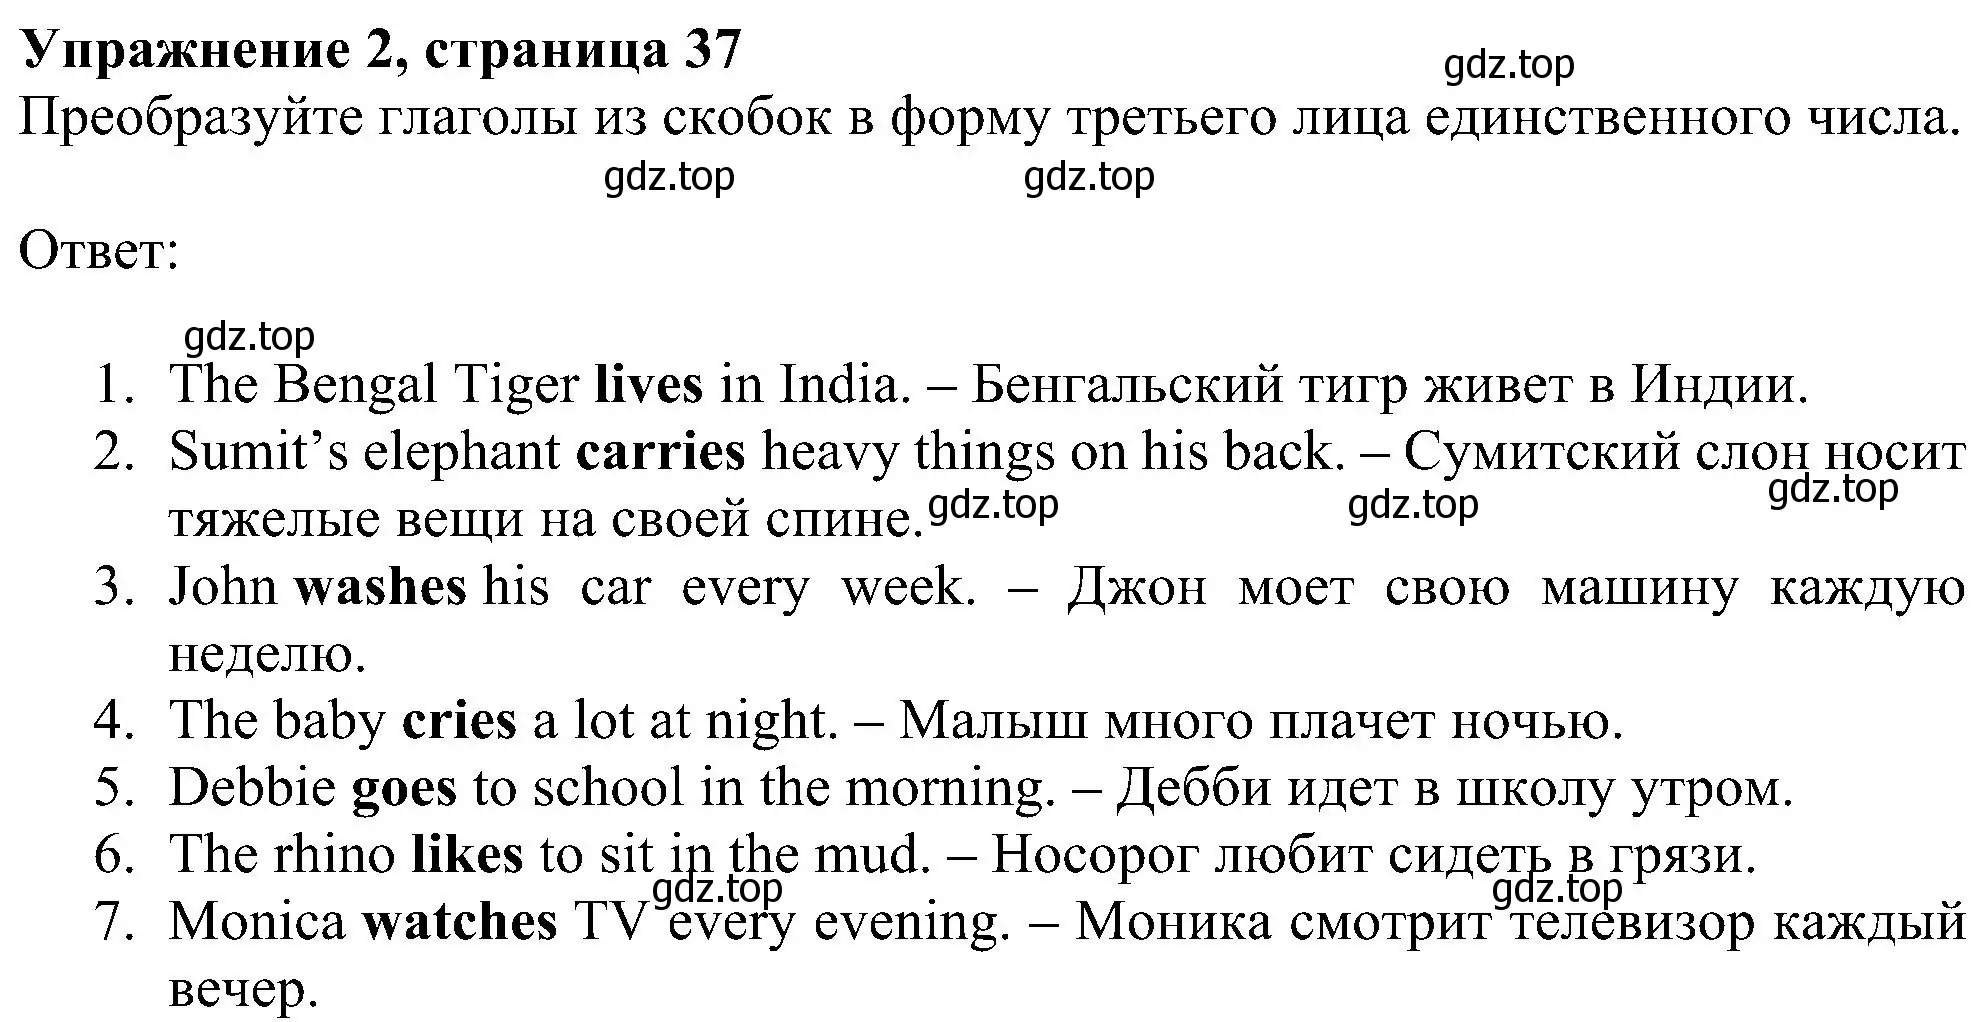 Решение номер 2 (страница 37) гдз по английскому языку 5 класс Ваулина, Дули, рабочая тетрадь